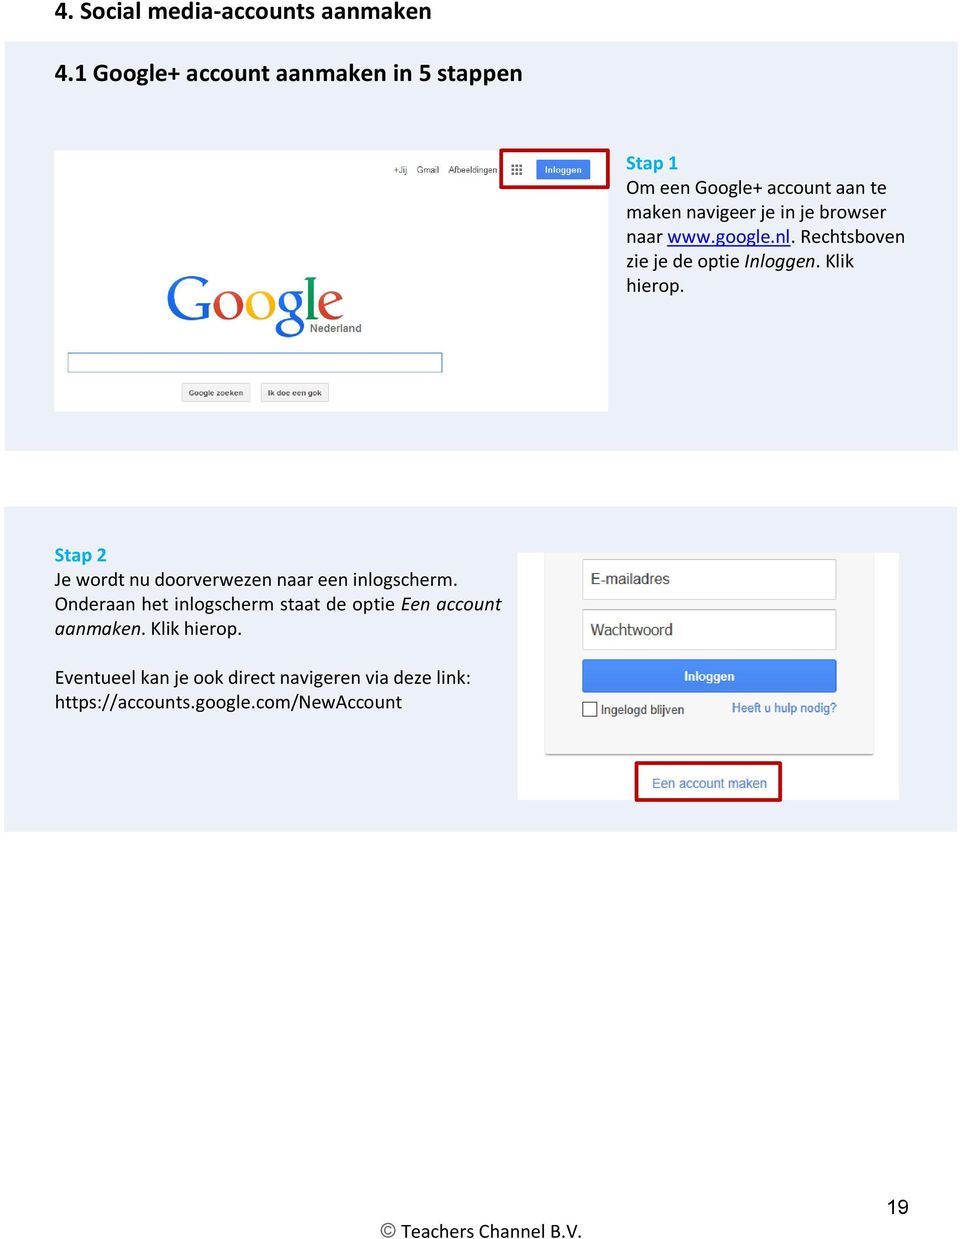 naar www.google.nl. Rechtsboven zie je de optie Inloggen. Klik hierop.